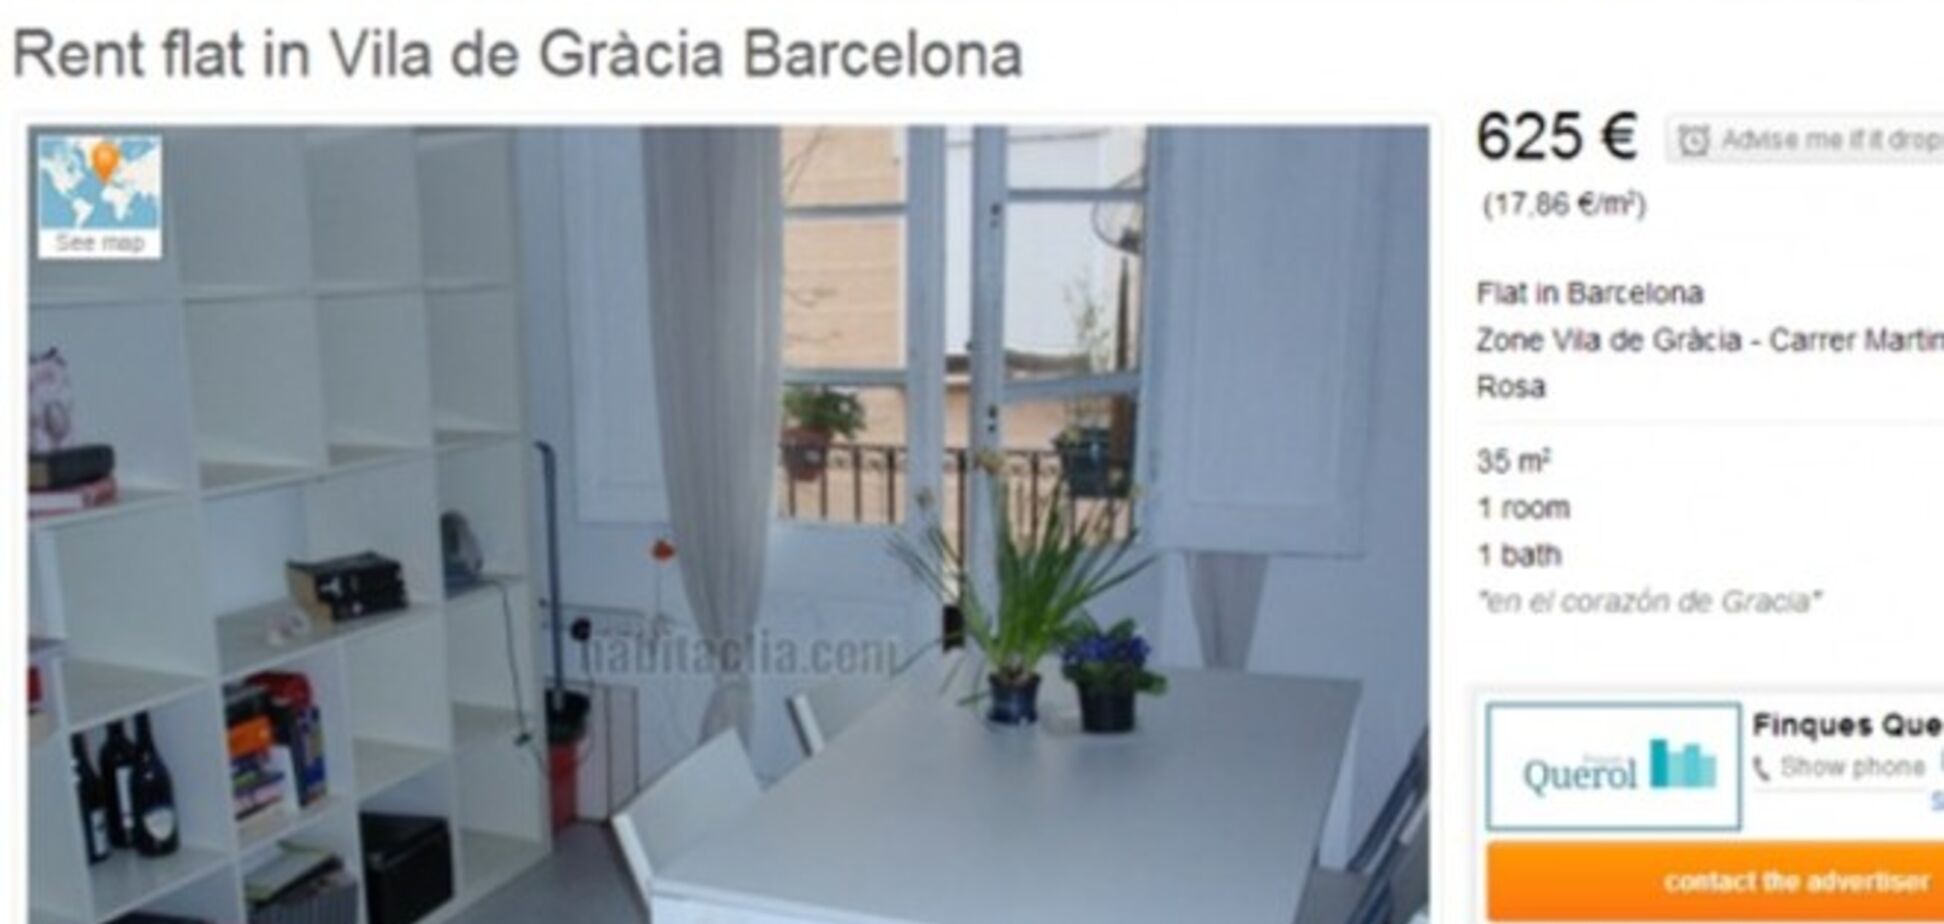 На невольничьем рынке: сложно ли арендовать квартиру в Барселоне?